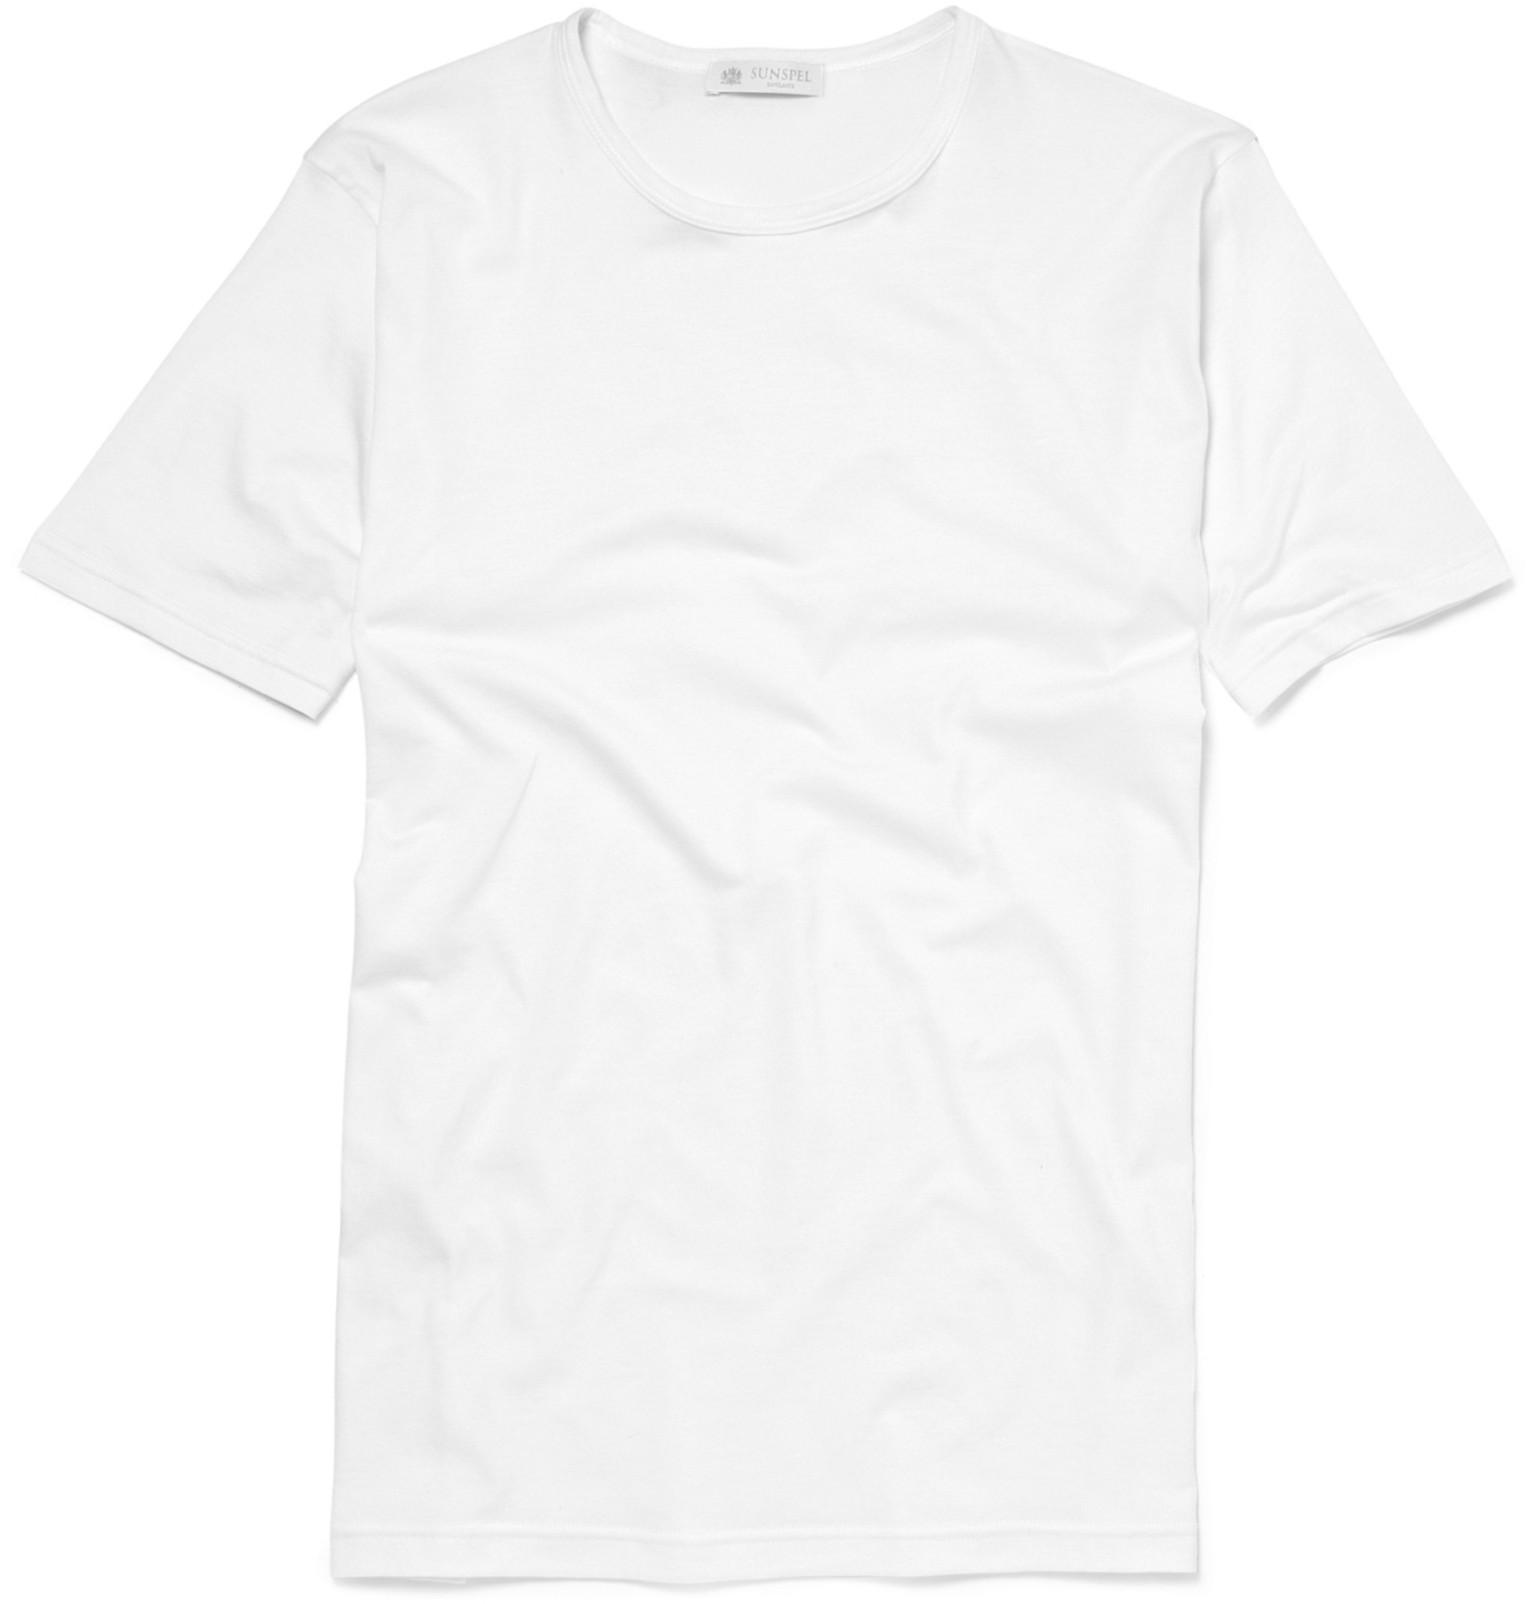 Lyst - Sunspel Crew-neck Superfine Cotton Underwear T-shirt in White ...